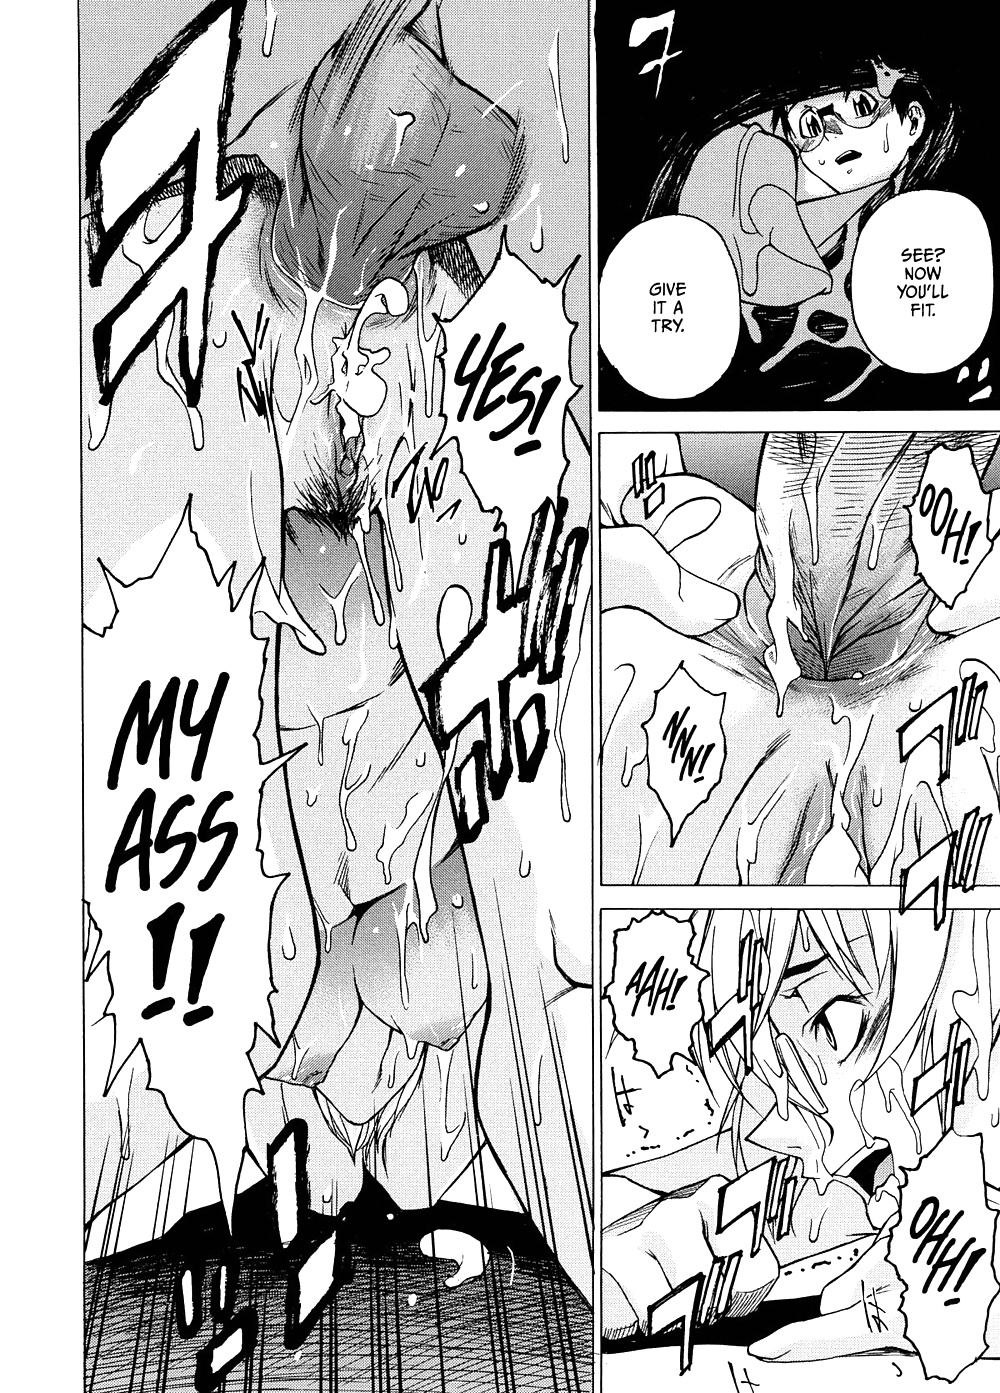 Domin-8 Me ( Take On me ) Hentai Manga Part 2 (12/98)